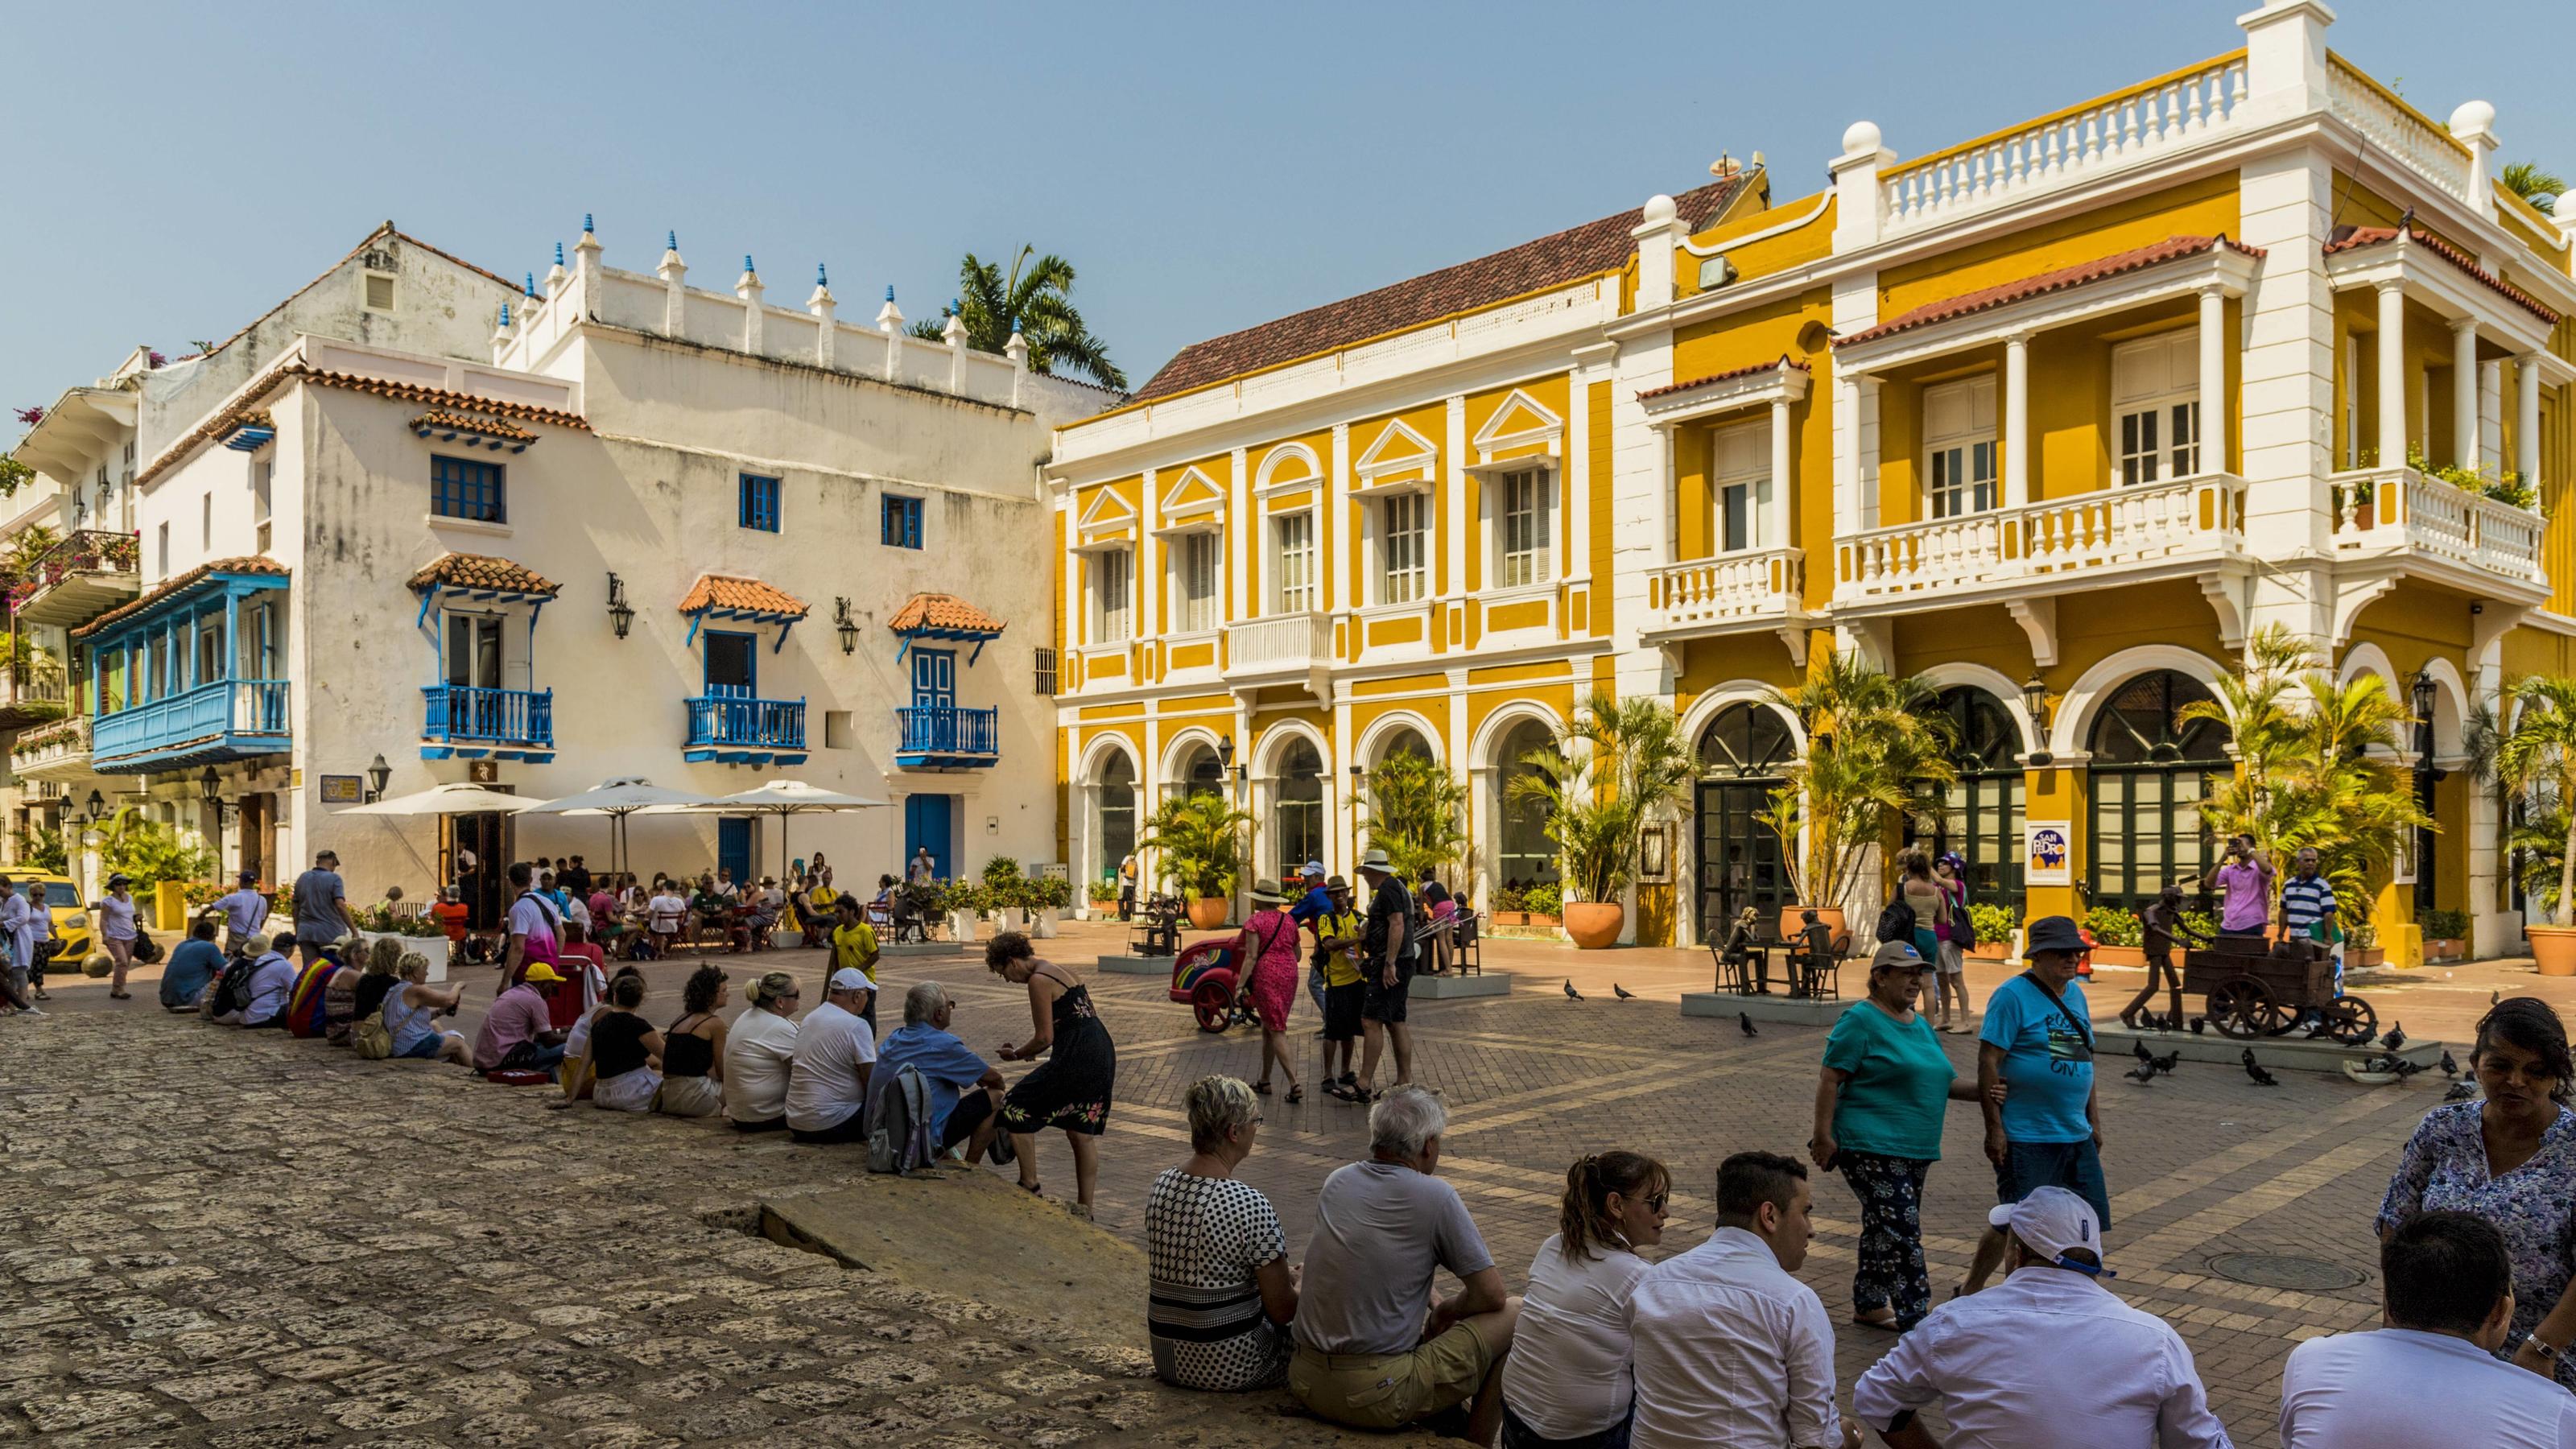 People relaxing in Plaza de San Pedro Claver, Cartagena de Indias, Colombia, South America